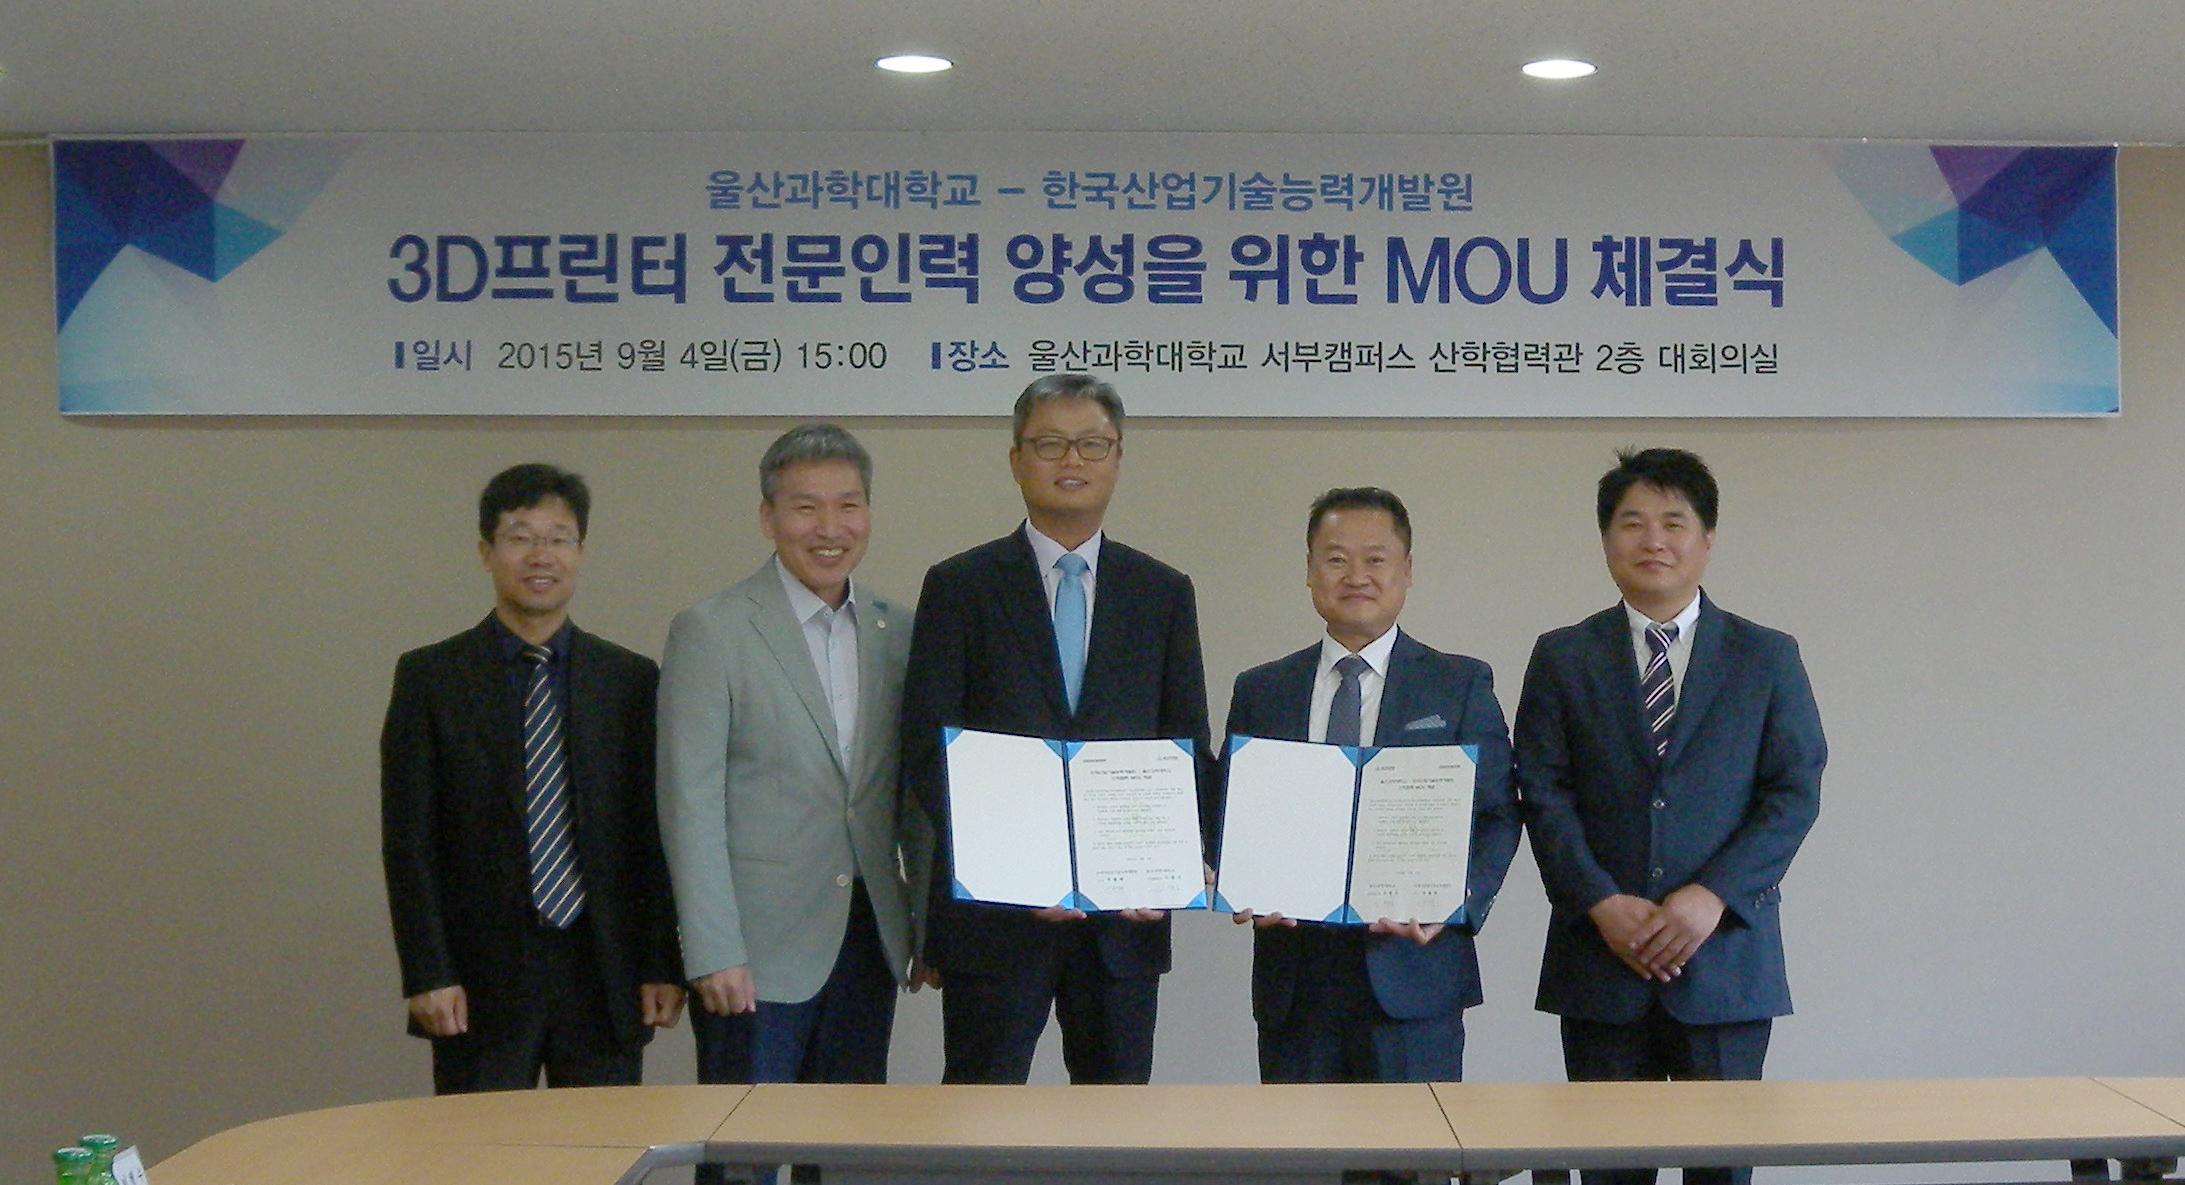 한국산업기술능력개발원과 3D프린터 전문인력양성 MOU 체결해